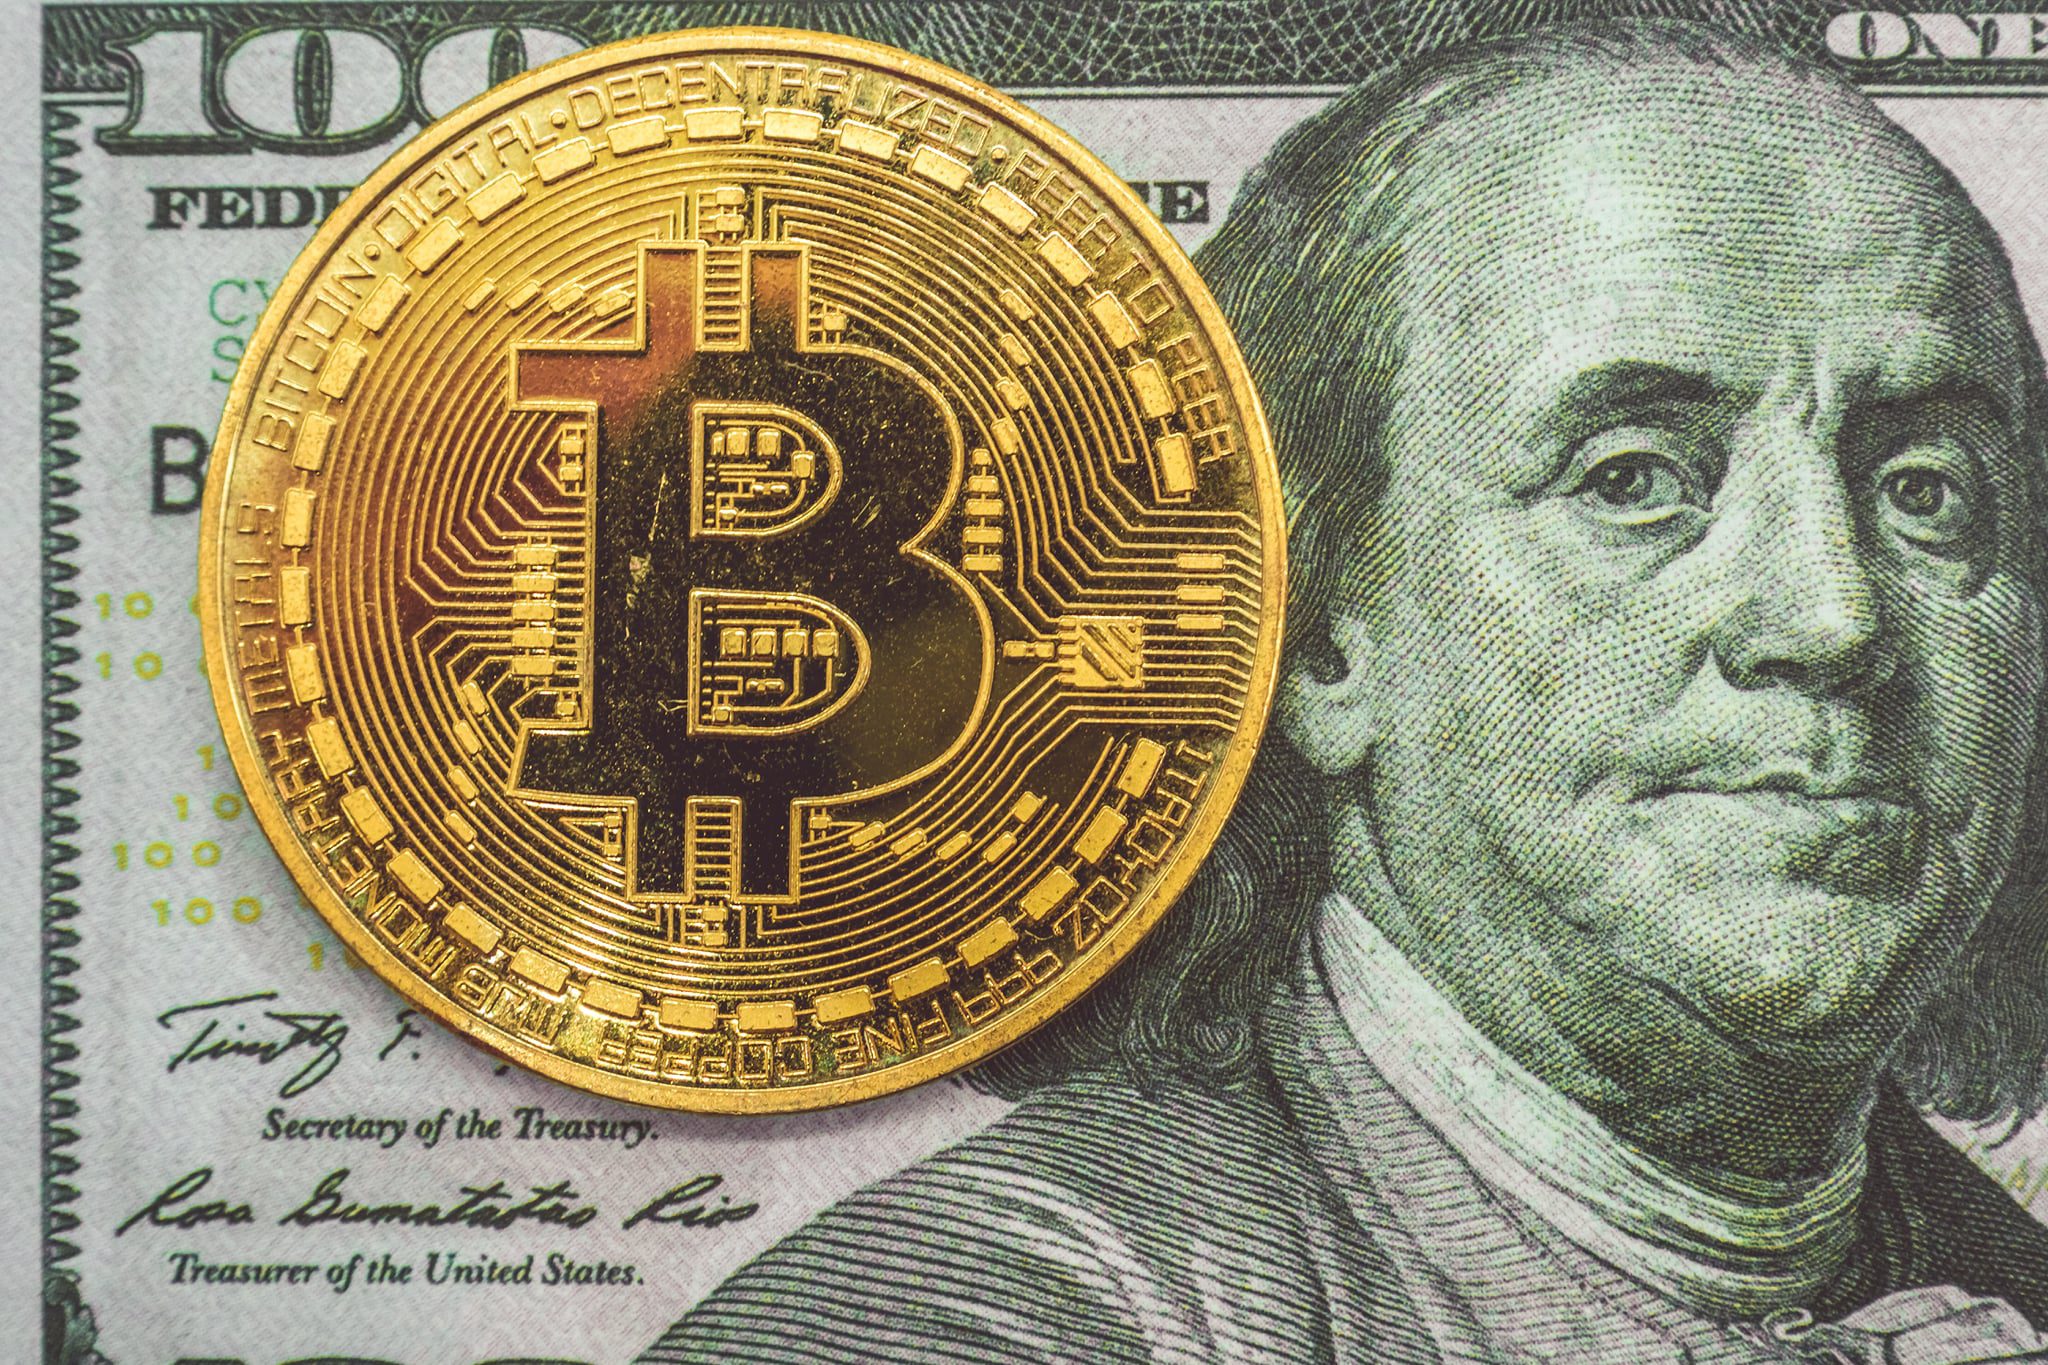 Bitcoin and Dollar